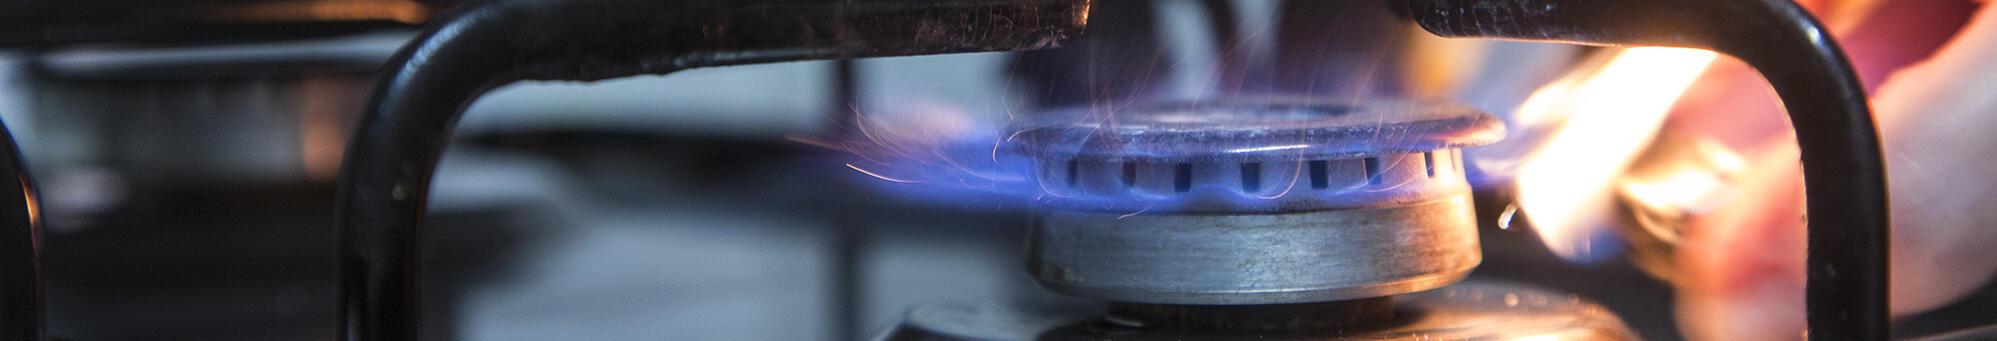 Imatge d'un foc de cuina de gas